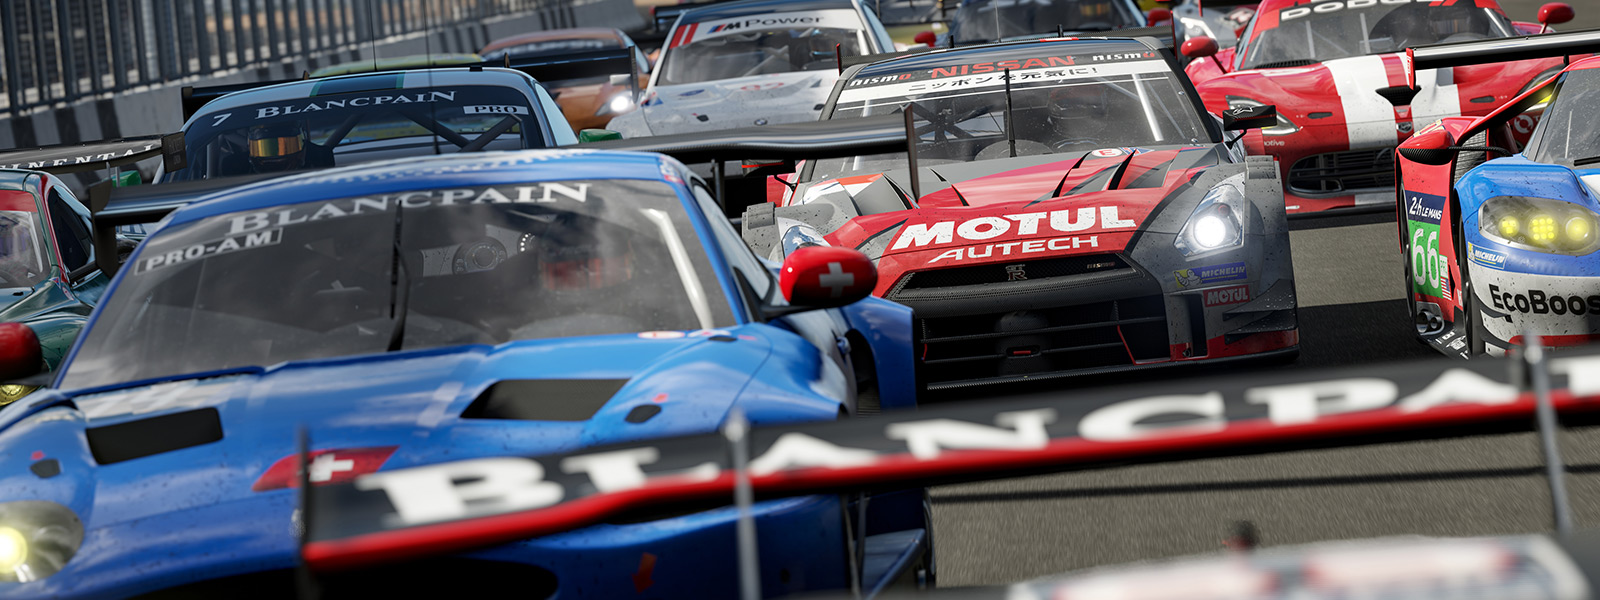 Vooraanzicht van de startrij voor een Forza-race uit de game Forza Motorsport 7